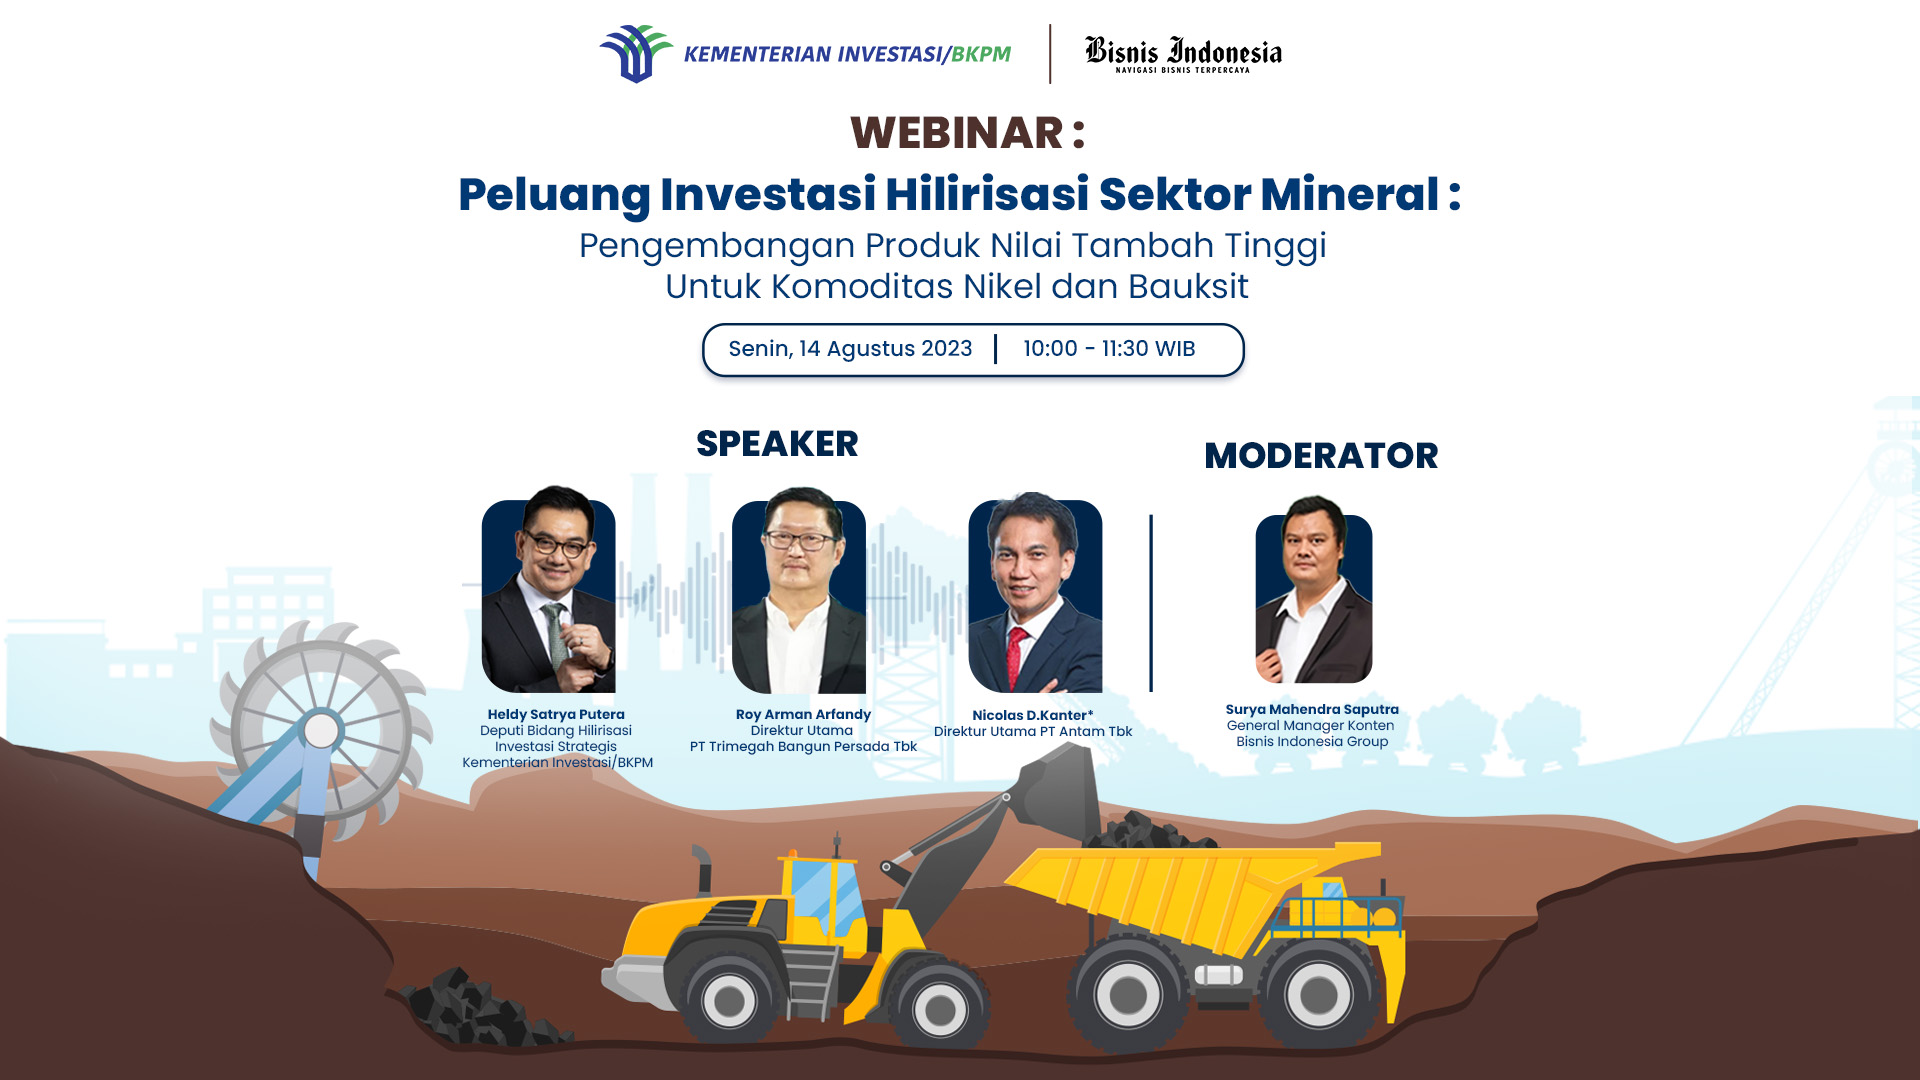 Webinar BKPM “Peluang investasi Hilirisasi sektor Mineral: Pengembangan Produk Nilai Tambah Tinggi Untuk Komoditas Nikel dan Bauksit”